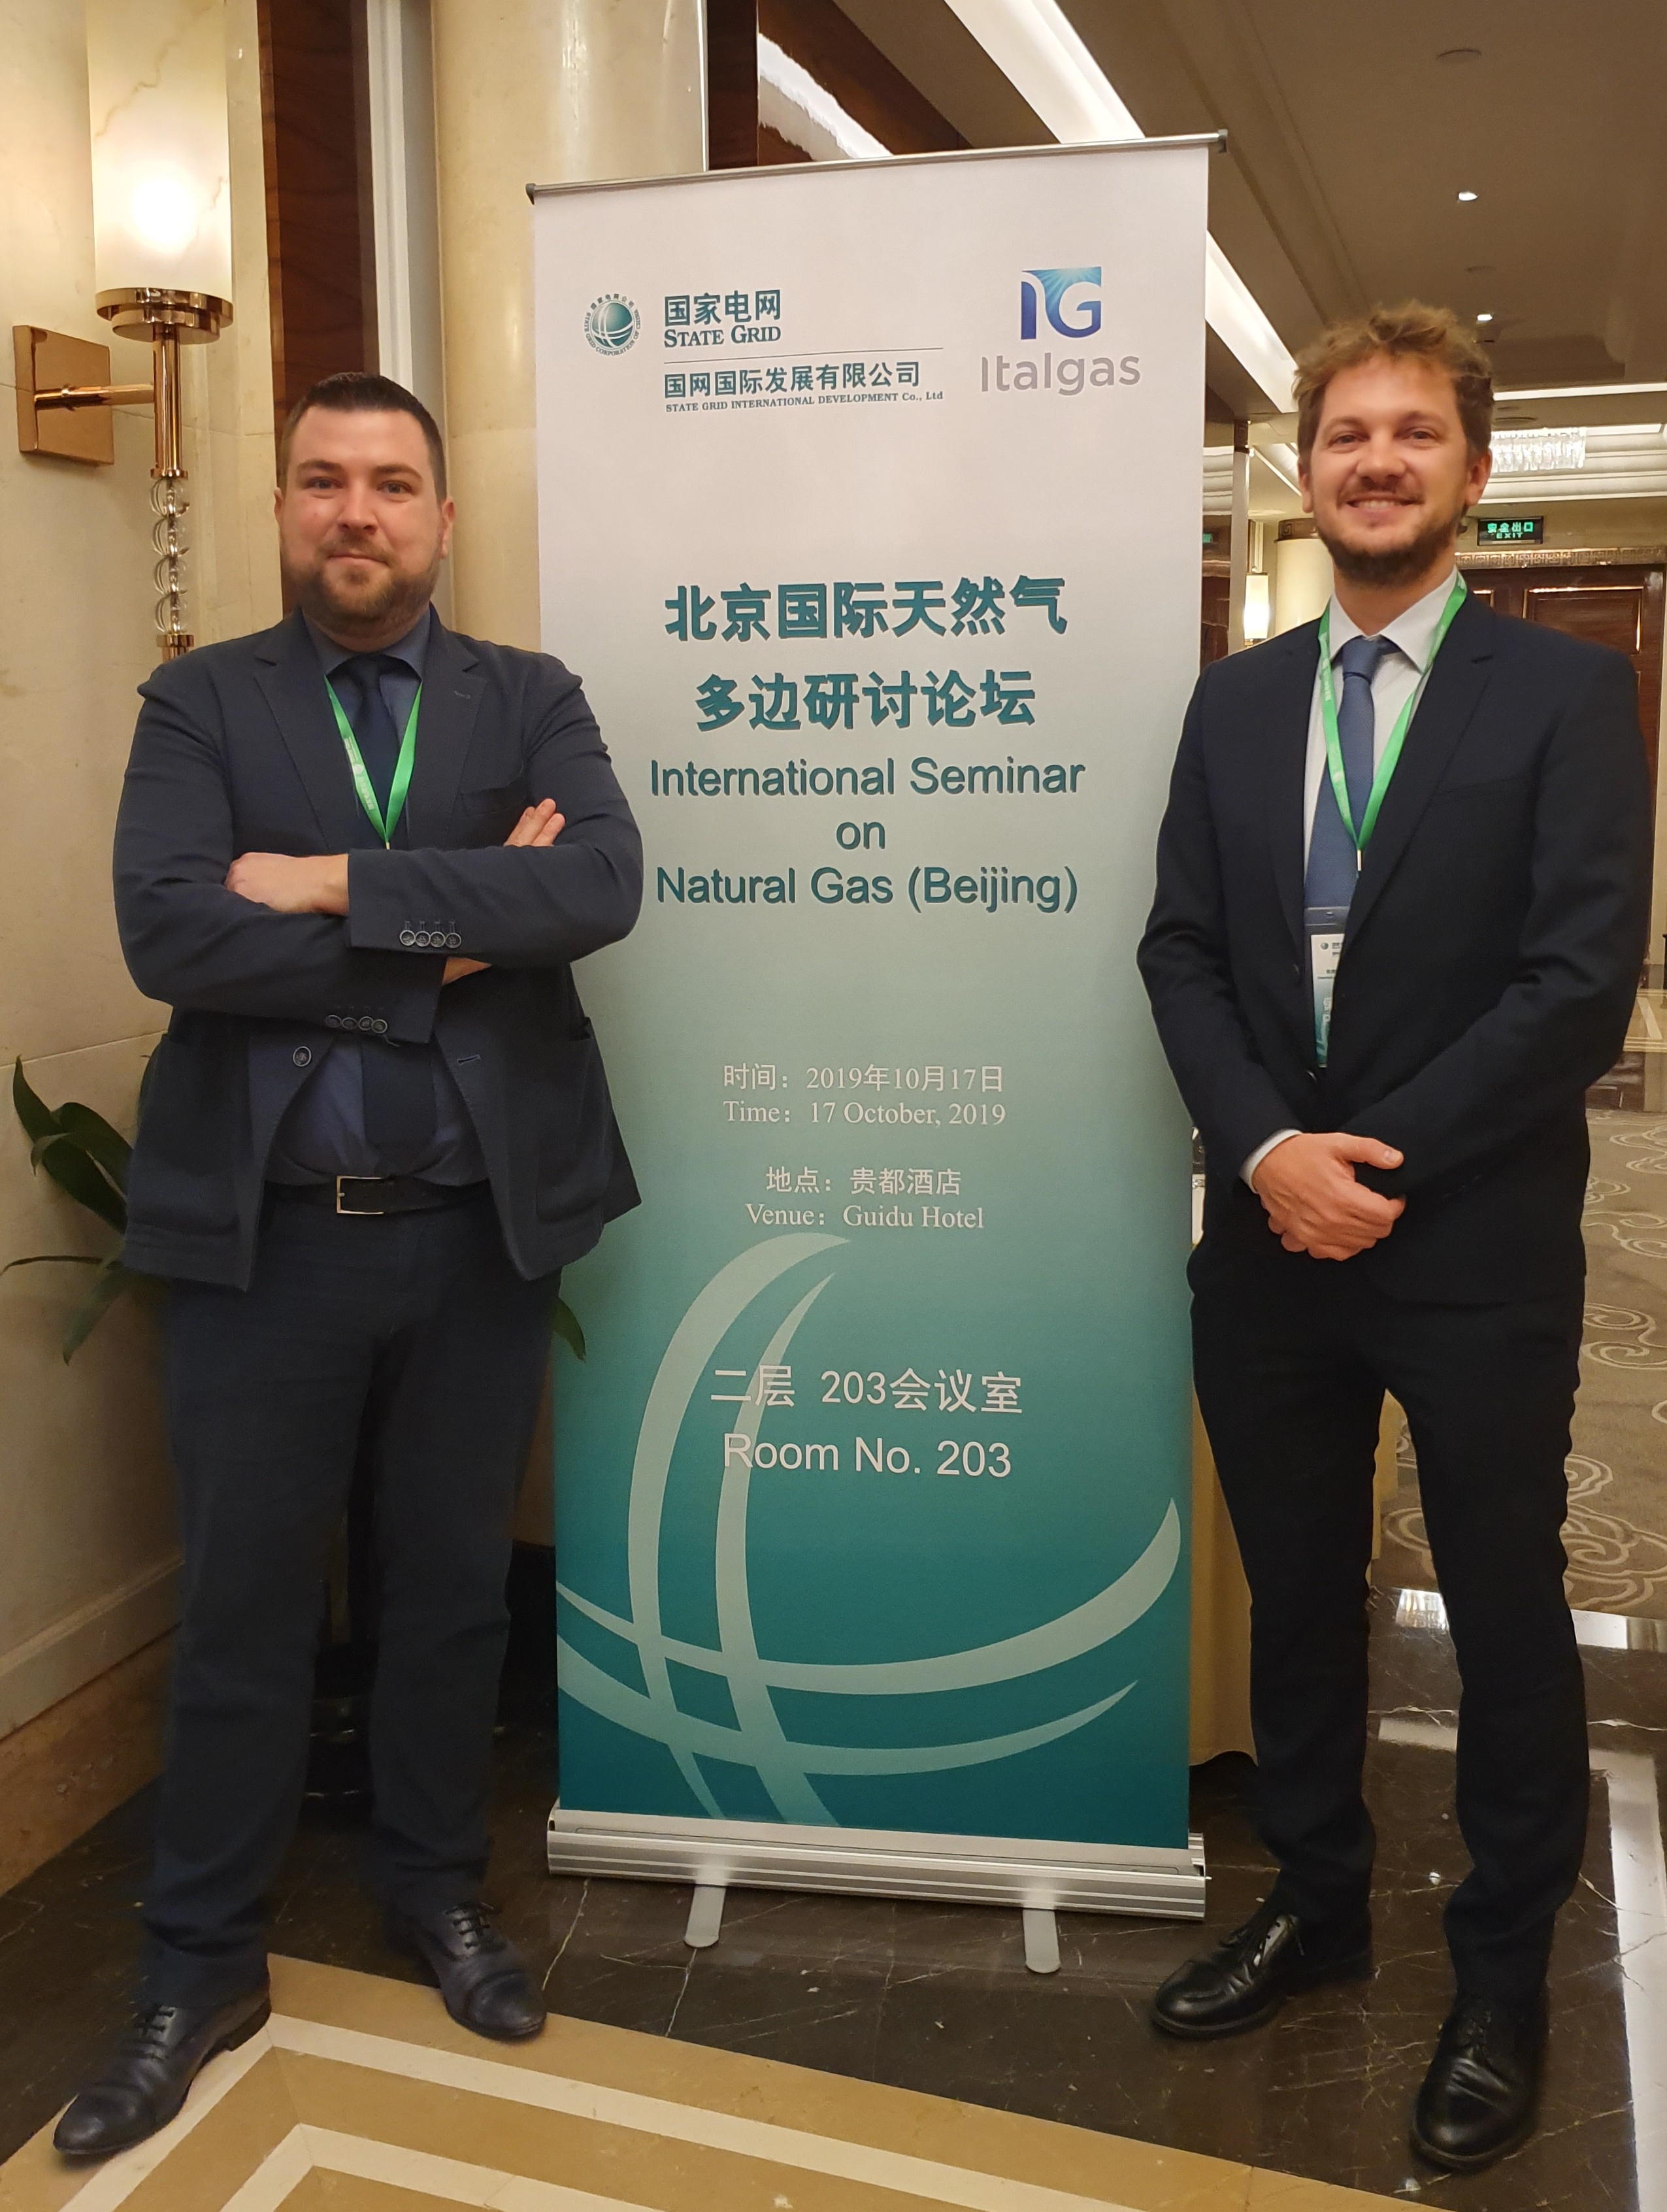 Cpl Concordia in Cina con la delegazione Italgas per esportare soluzioni nel mercato del gas